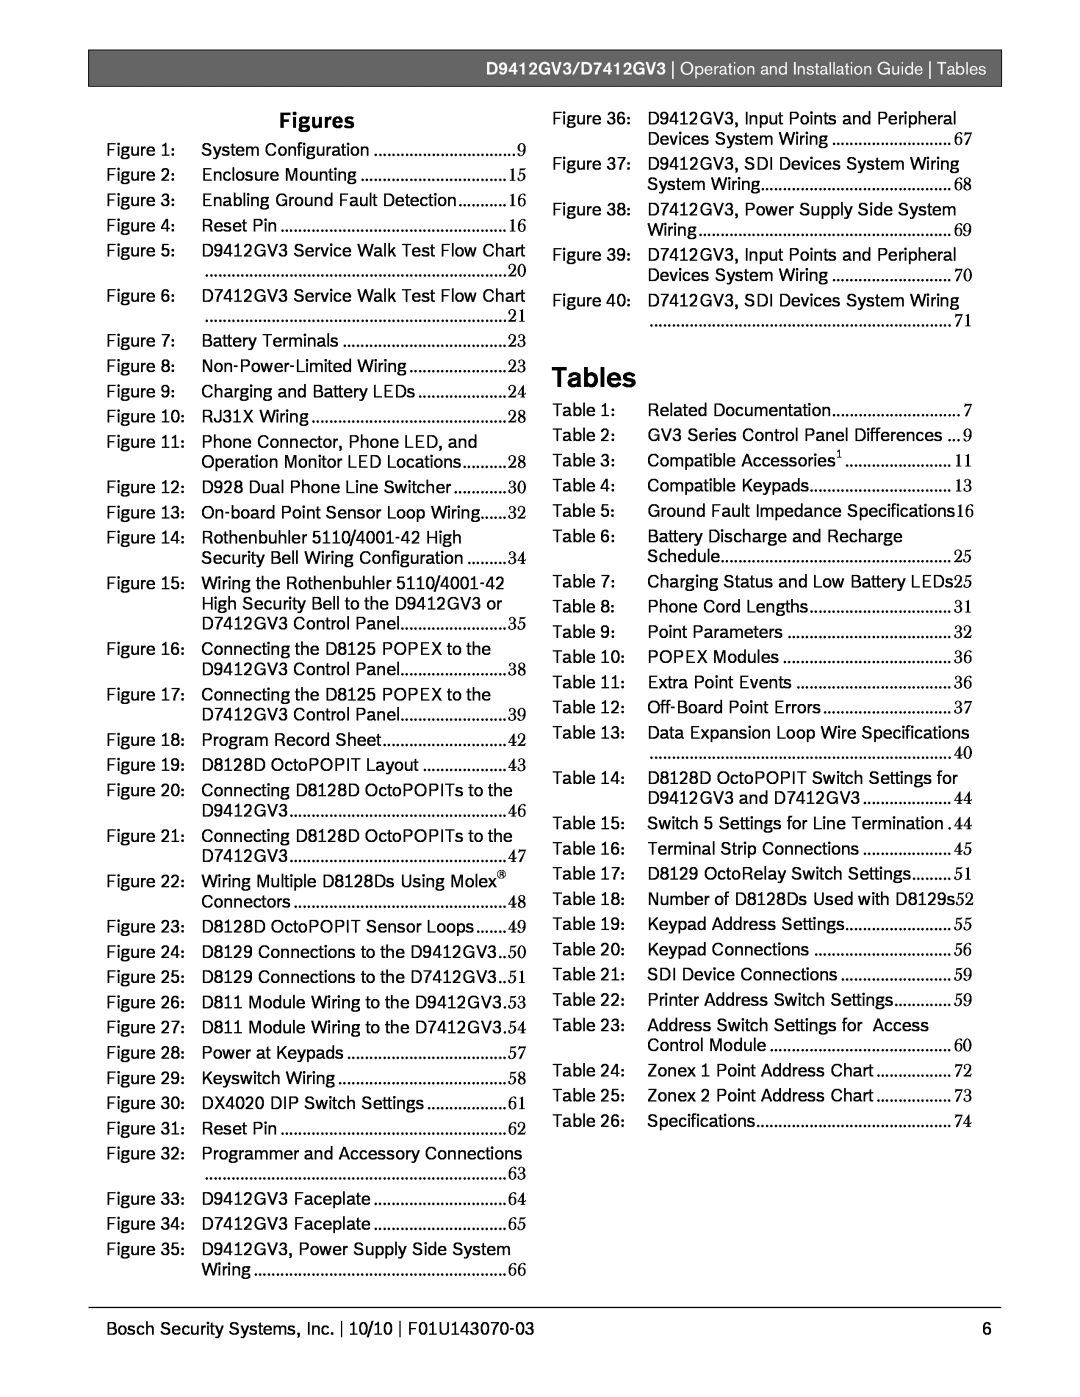 Bosch Appliances D9412GV3, D7412GV3 manual Tables, Figures 